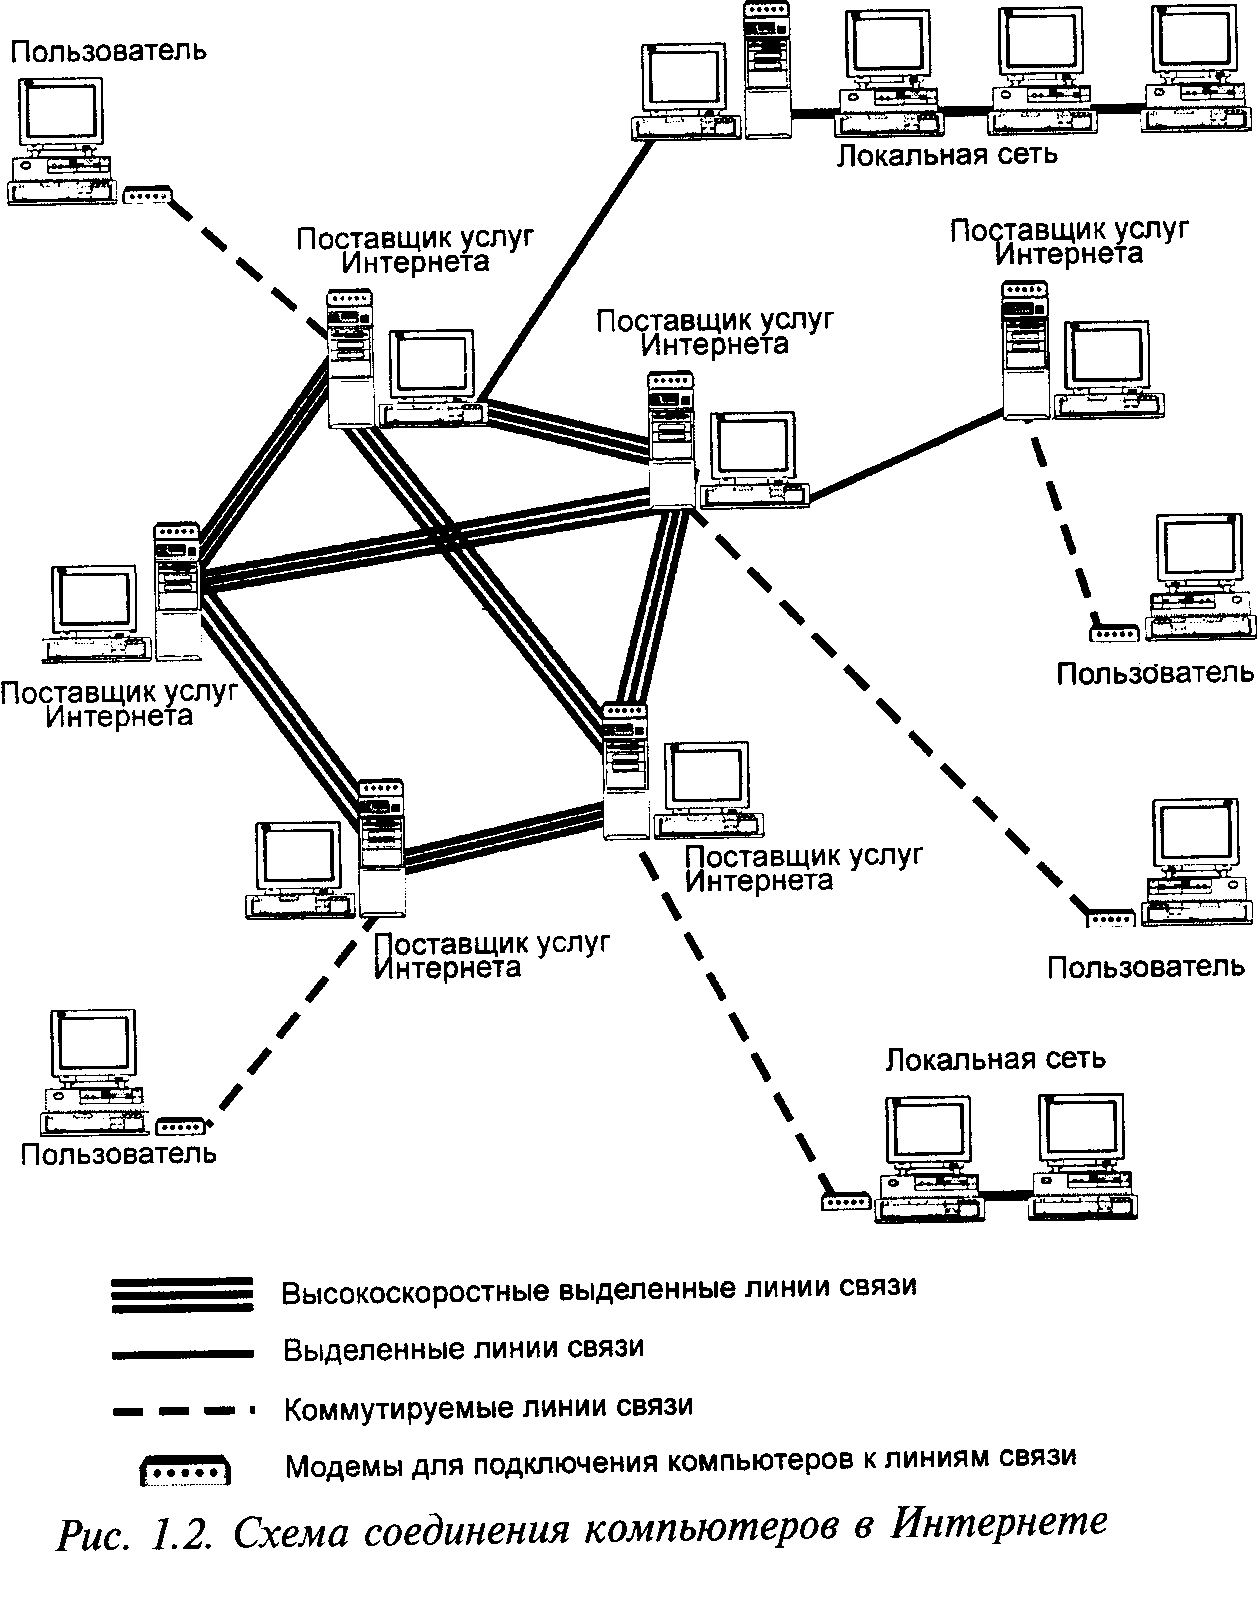 Ооо сеть интернет. Схема локальной сети организации интернет провайдера. Структурная схема подключения к локальной сети. Схема соединения 3 локальной сети. Принципиальные схемы сетей связи.